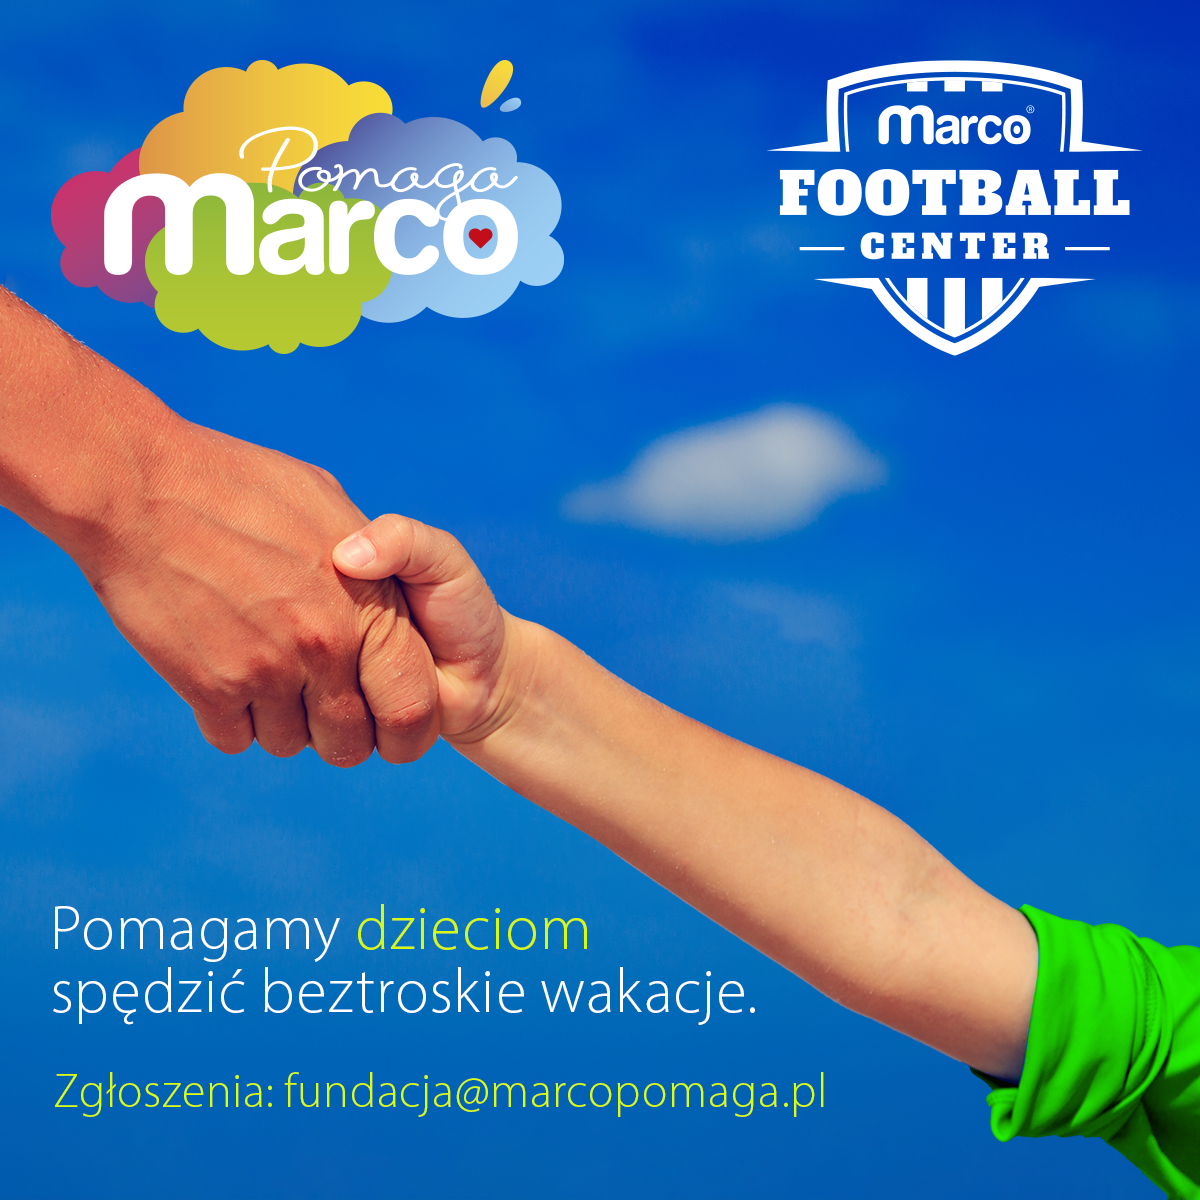 zdjęcie przedstawia ściskające się dłonie dorosłego i dziecka, logo firmy Marco i Fundacji MarcoPomaga 